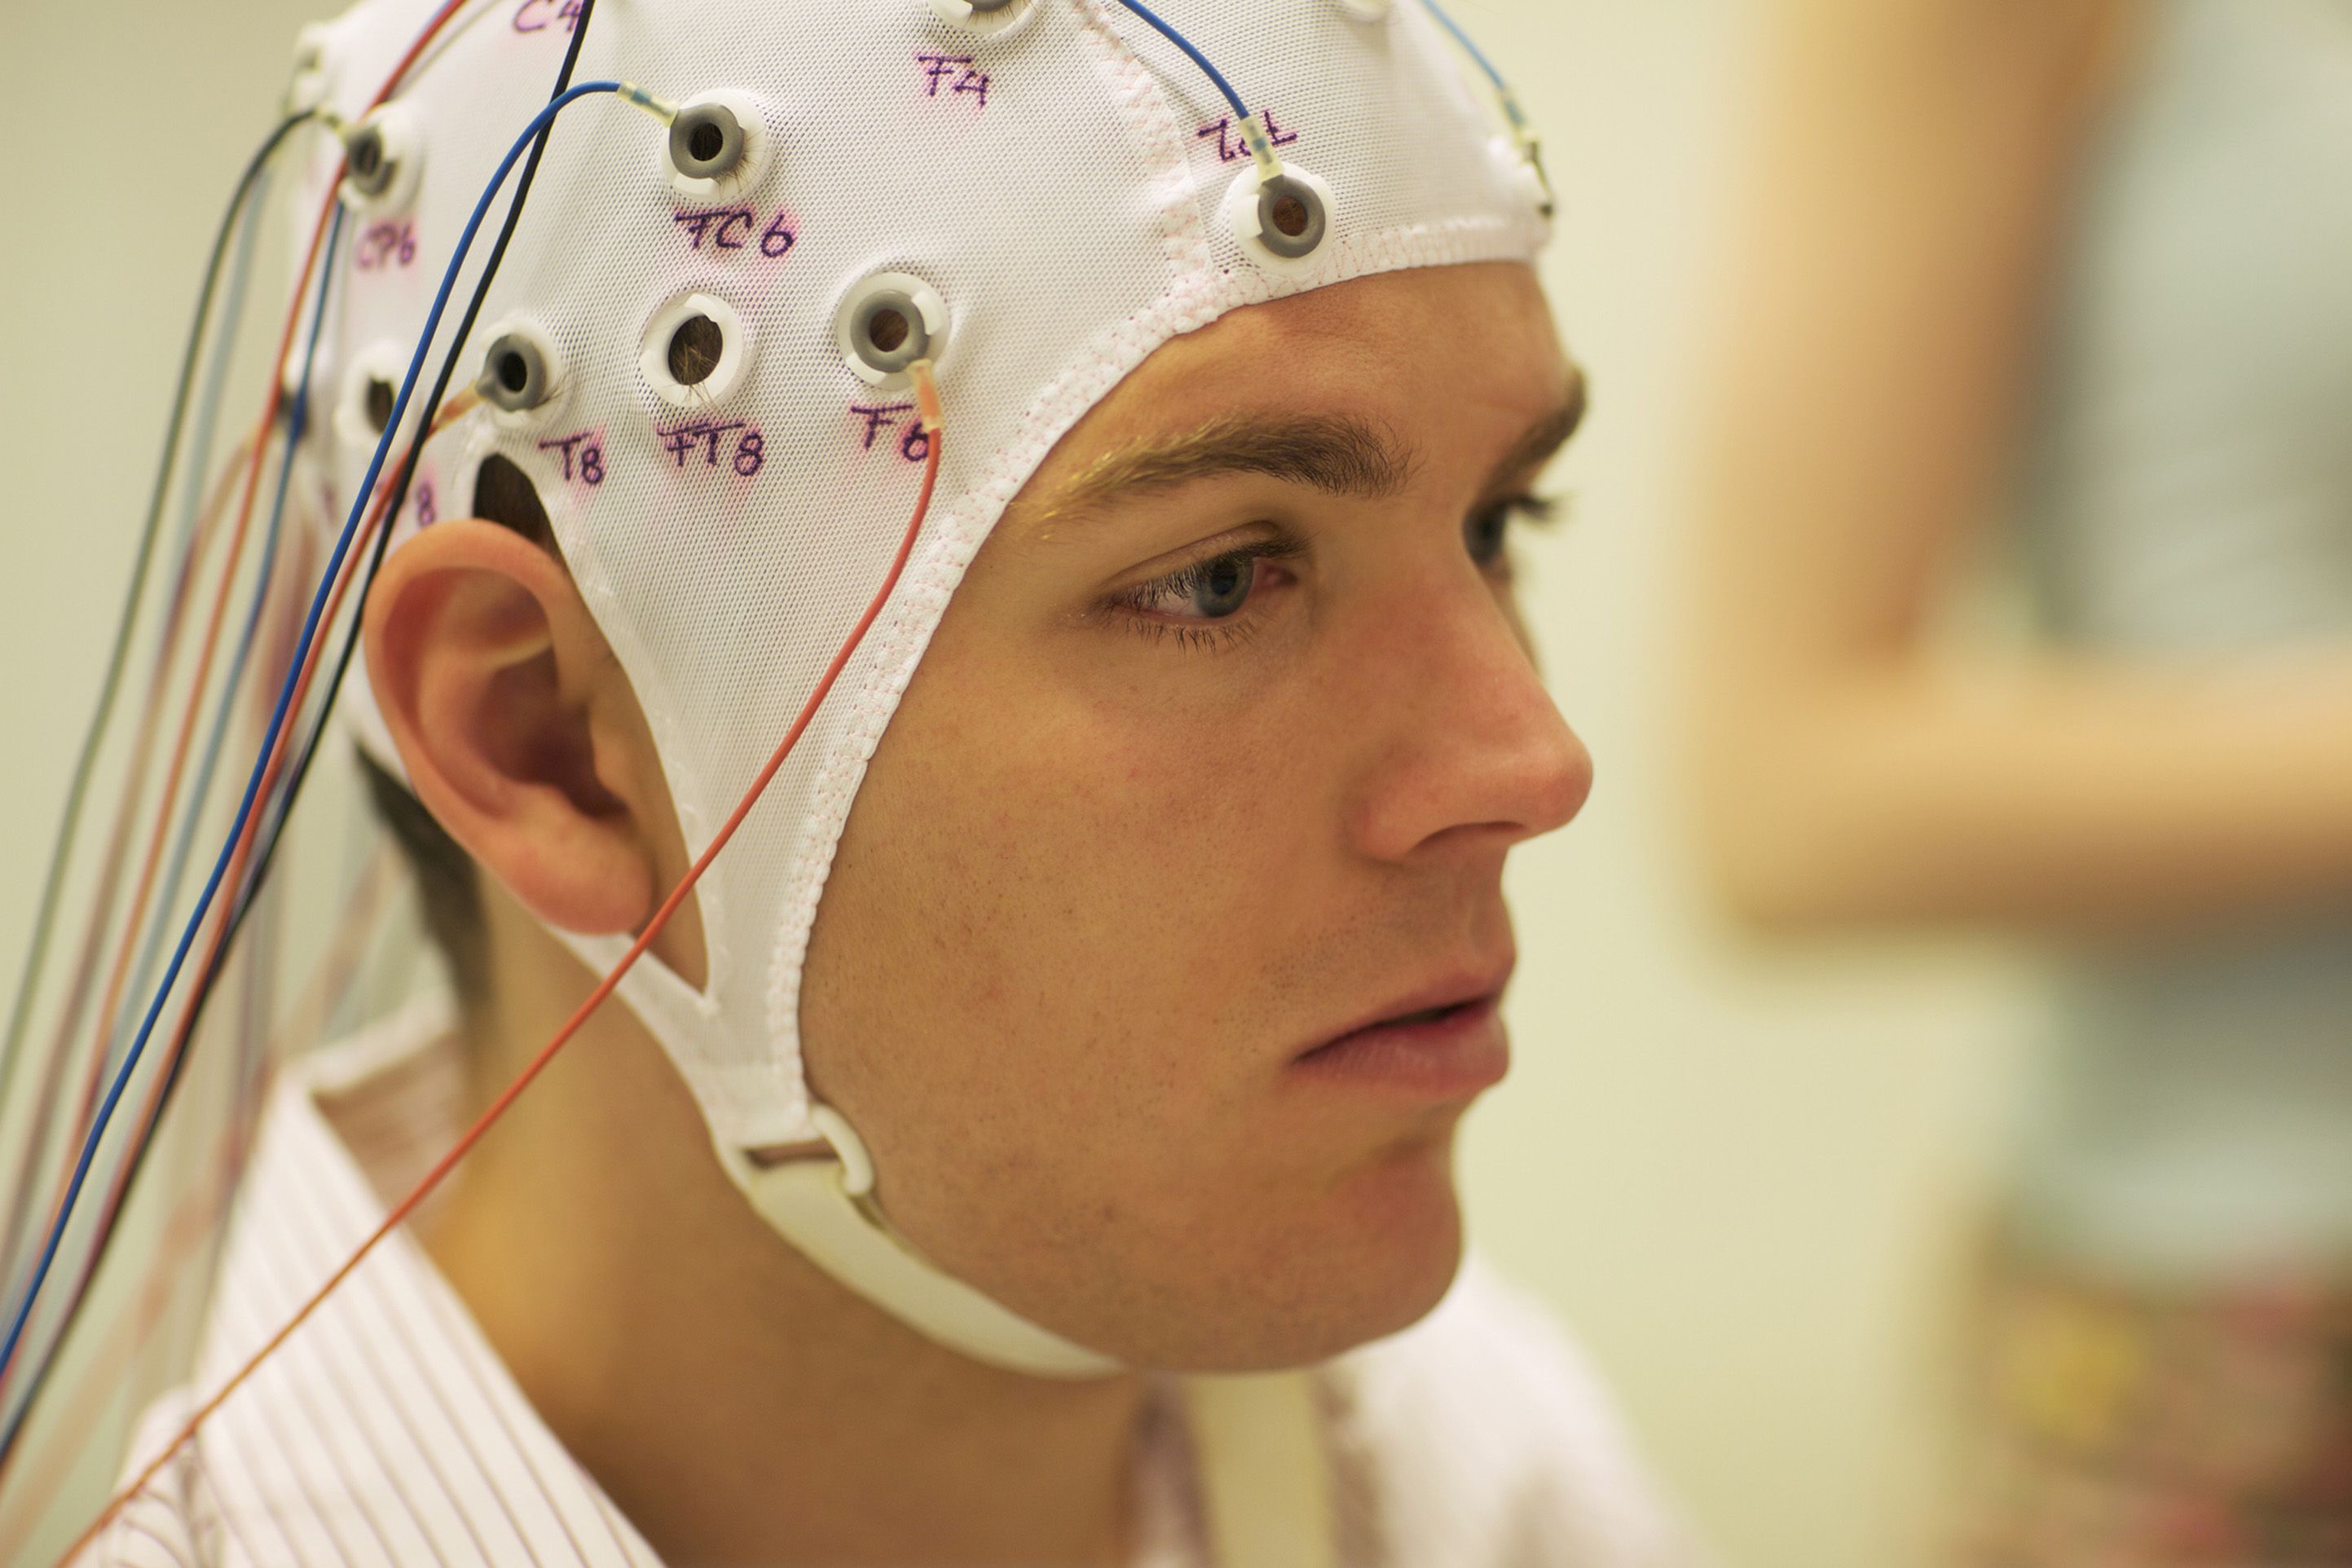 Ээг невролог. Шапочка для ЭЭГ. Исследование головы. Шлем для головного мозга. Шлем для ЭЭГ.